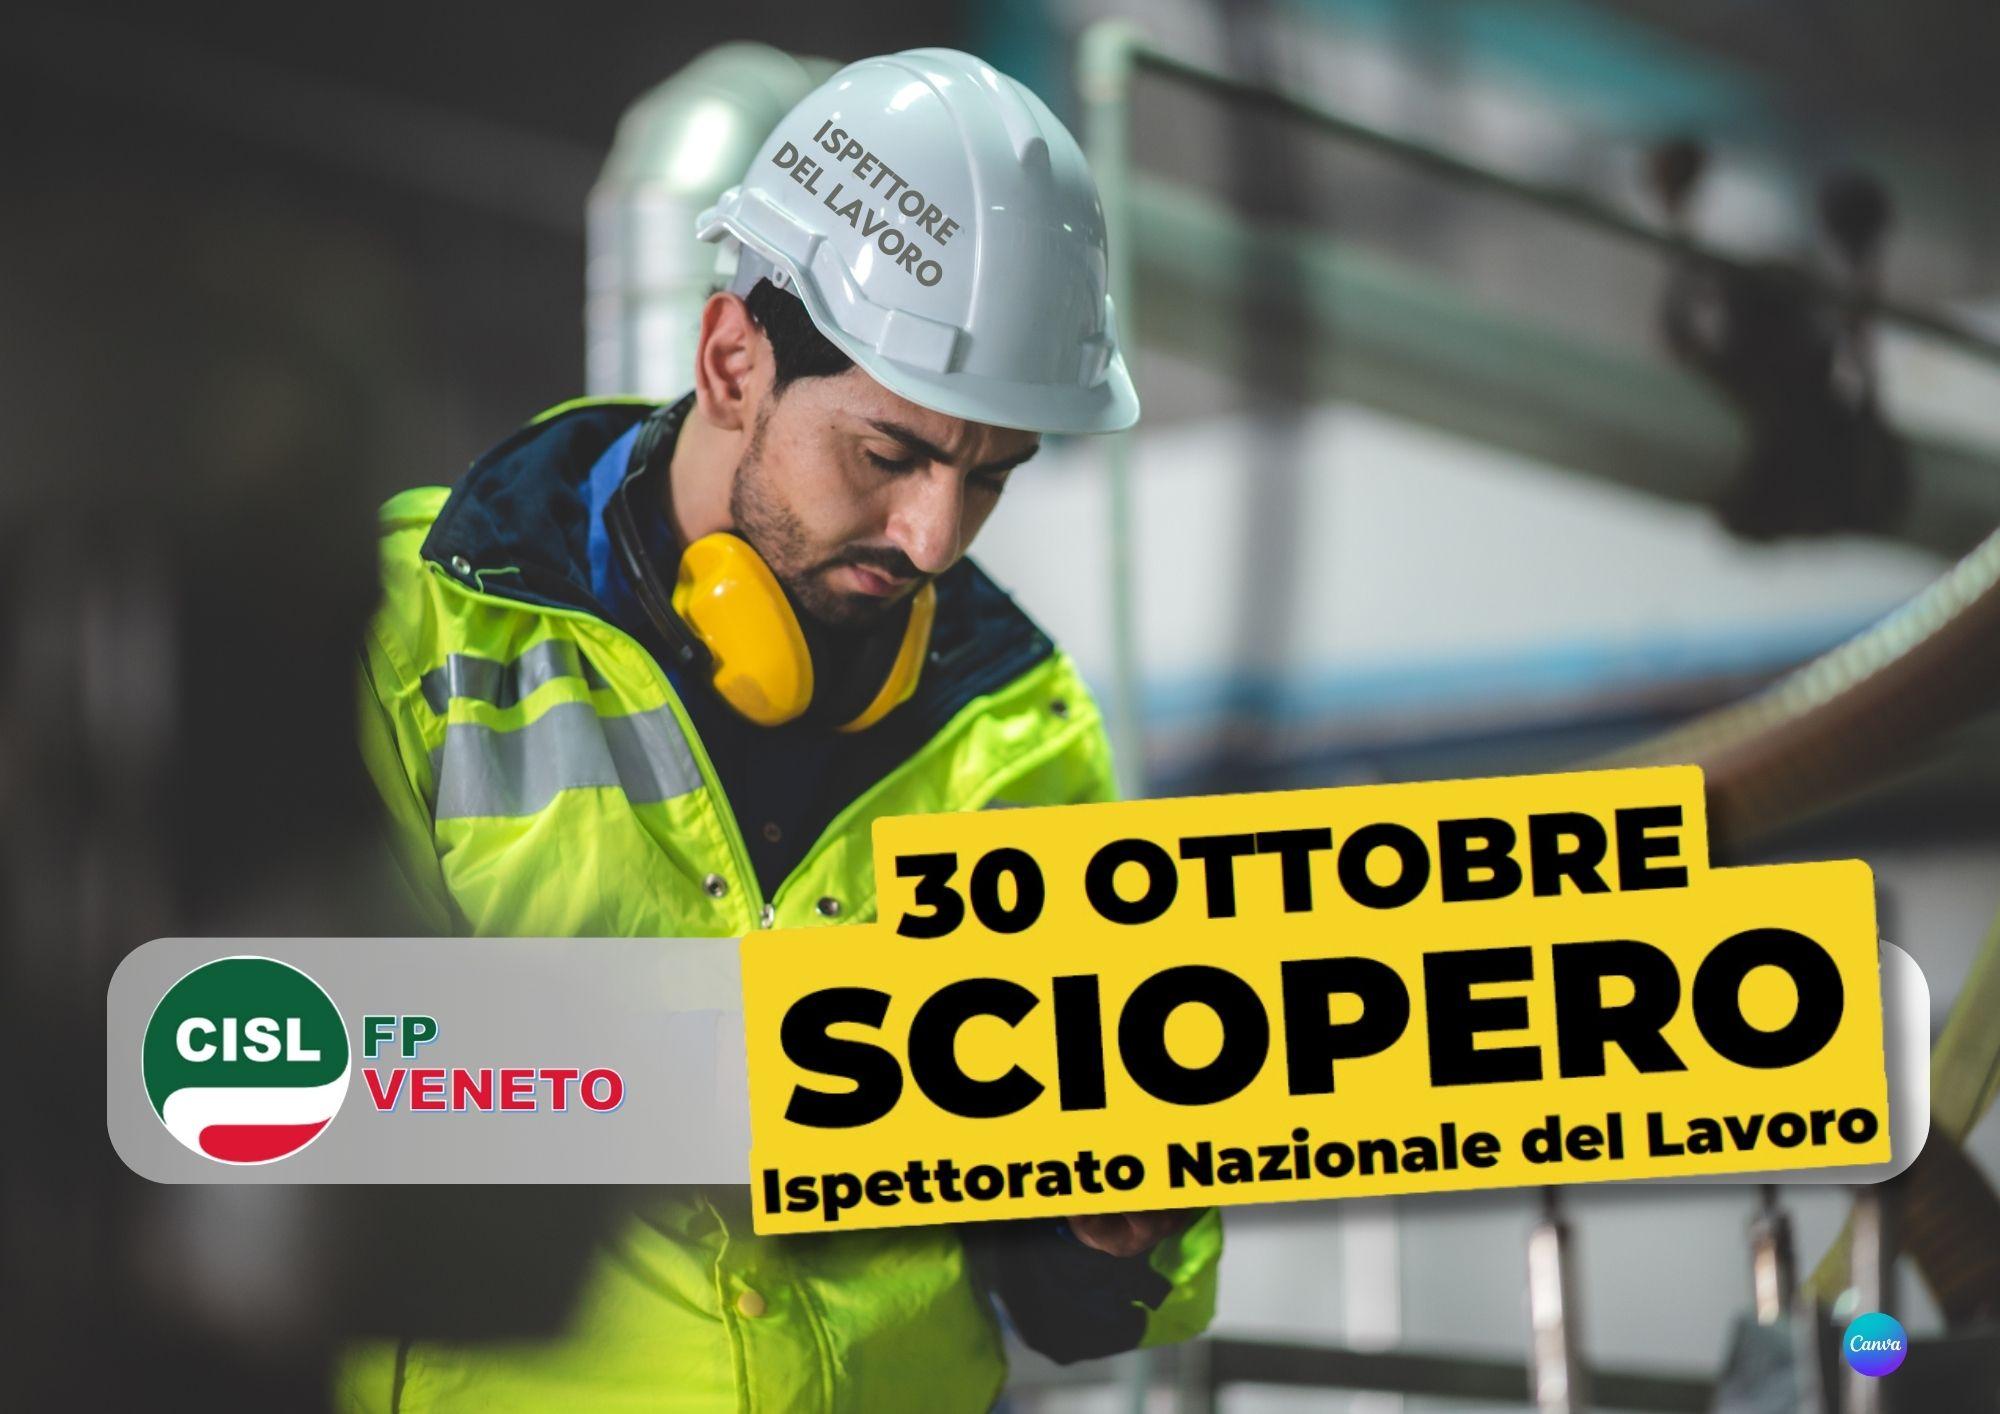 CISL FP Veneto. 30 ottobre sciopero Ispettorato Nazionale del Lavoro. La situazione. Le richieste